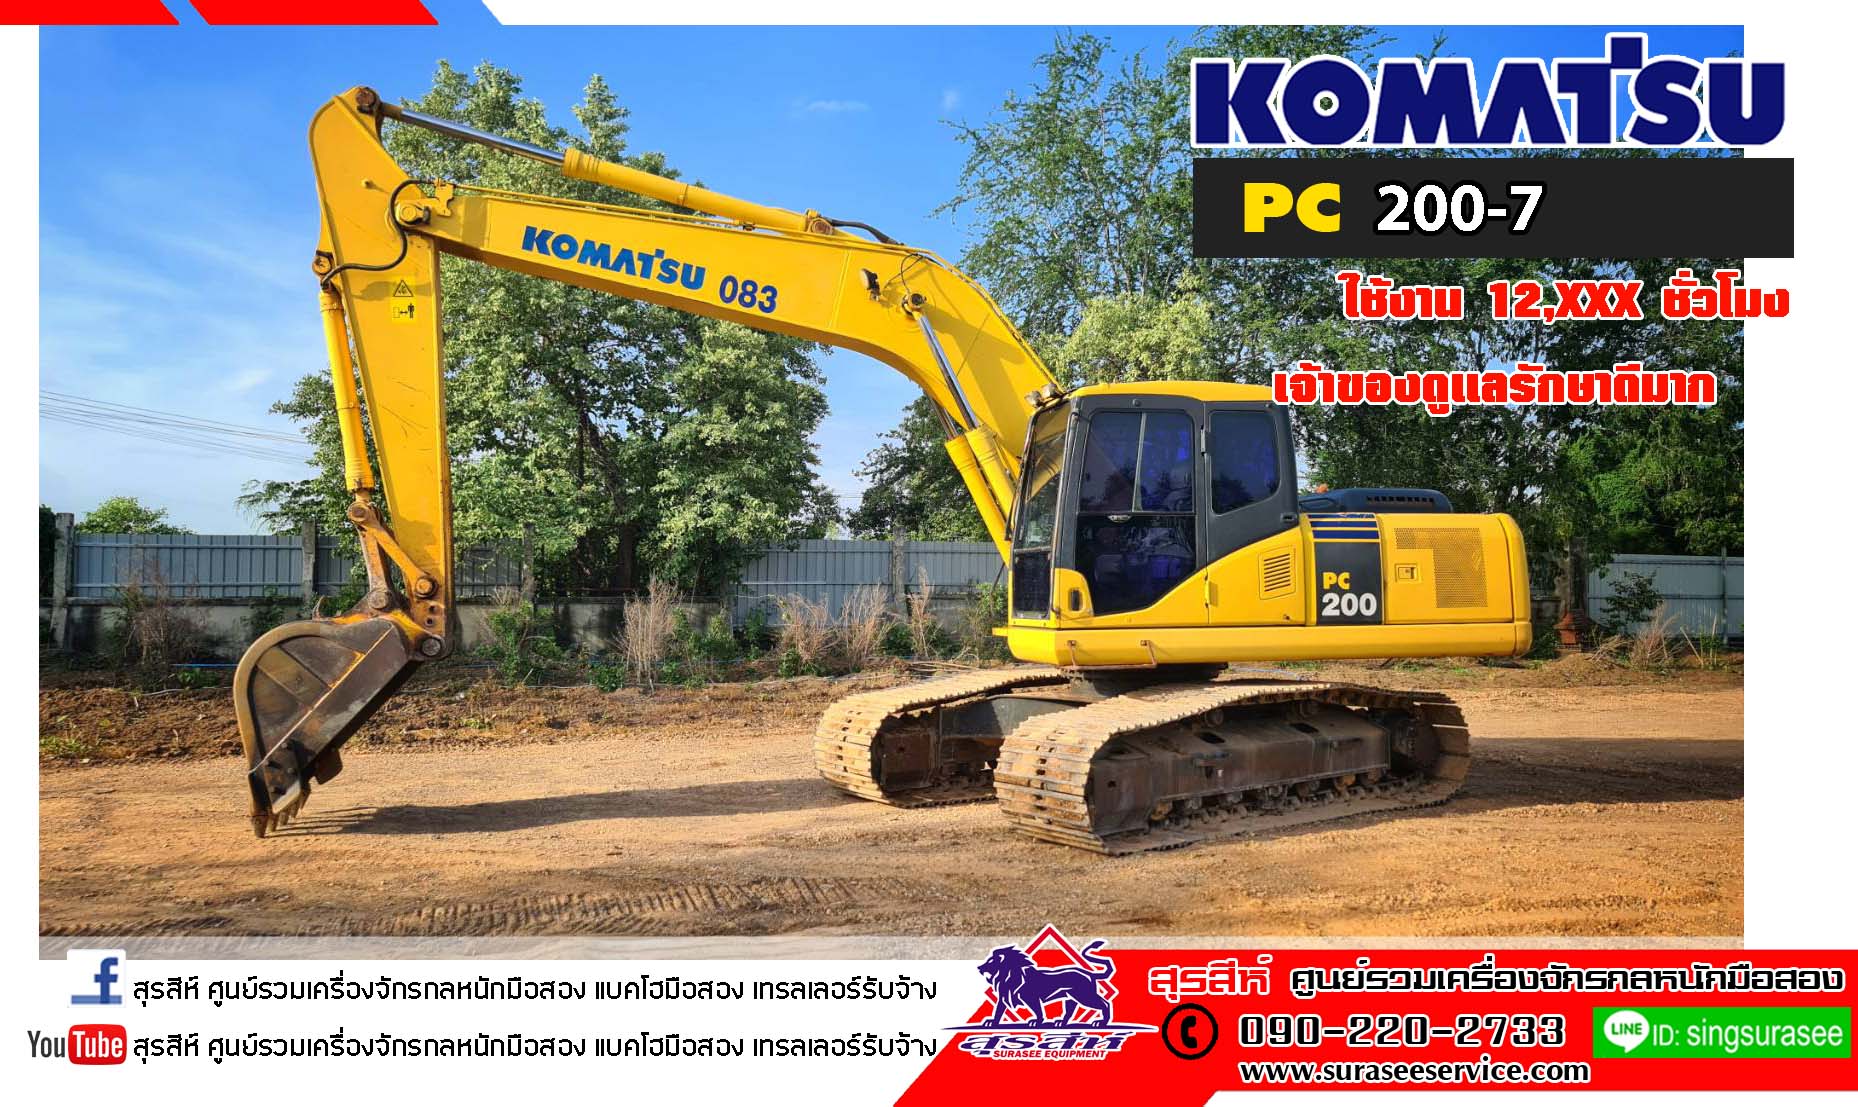 KOMATSU PC200-7 เจ้าของใช้งาน และดูแลรักษาดีมาก